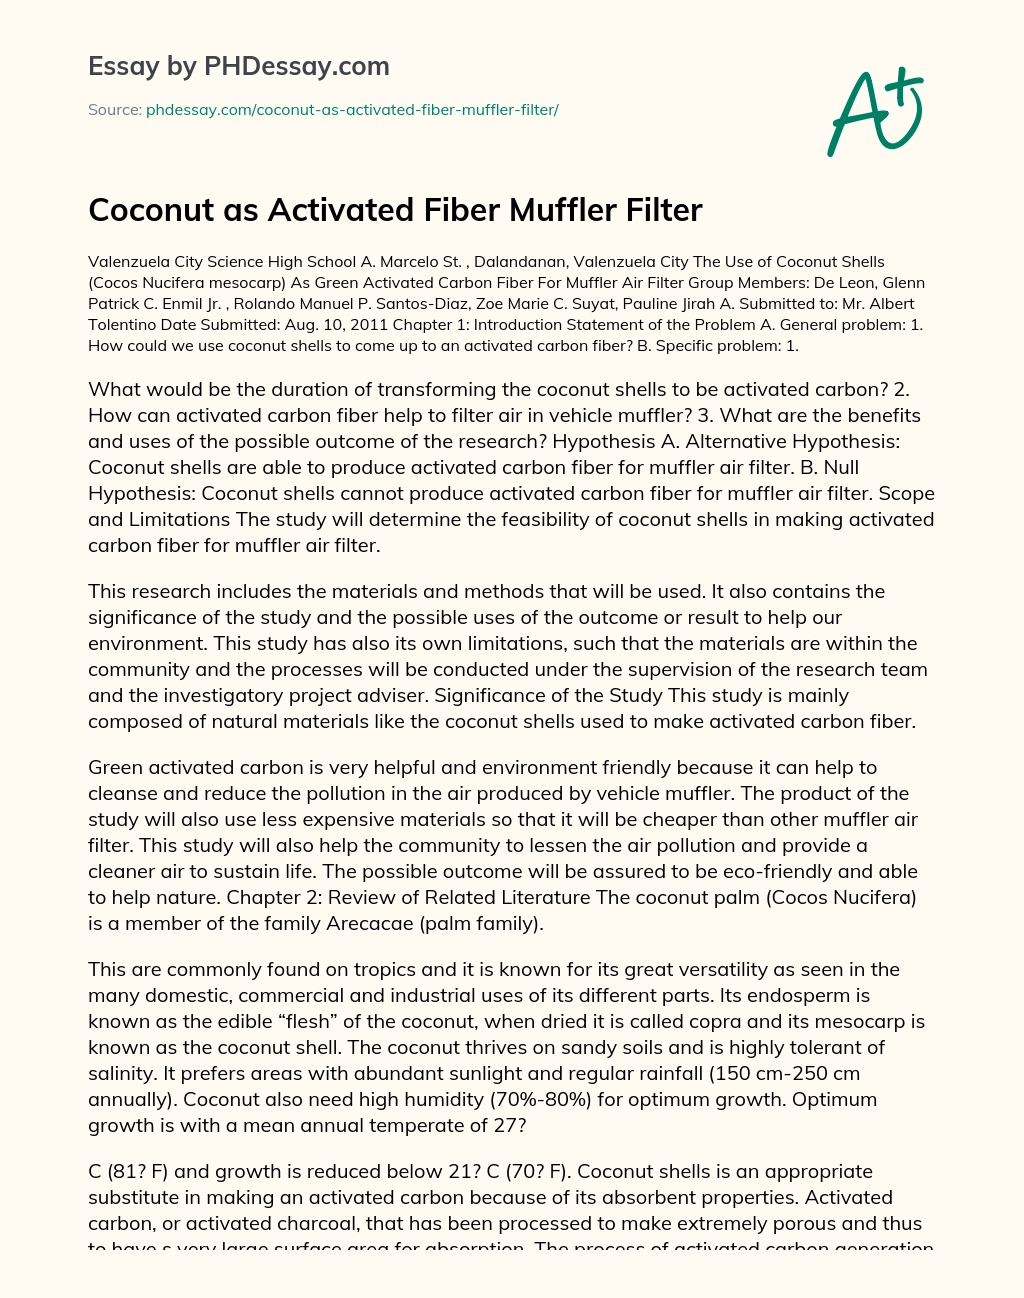 Coconut as Activated Fiber Muffler Filter essay